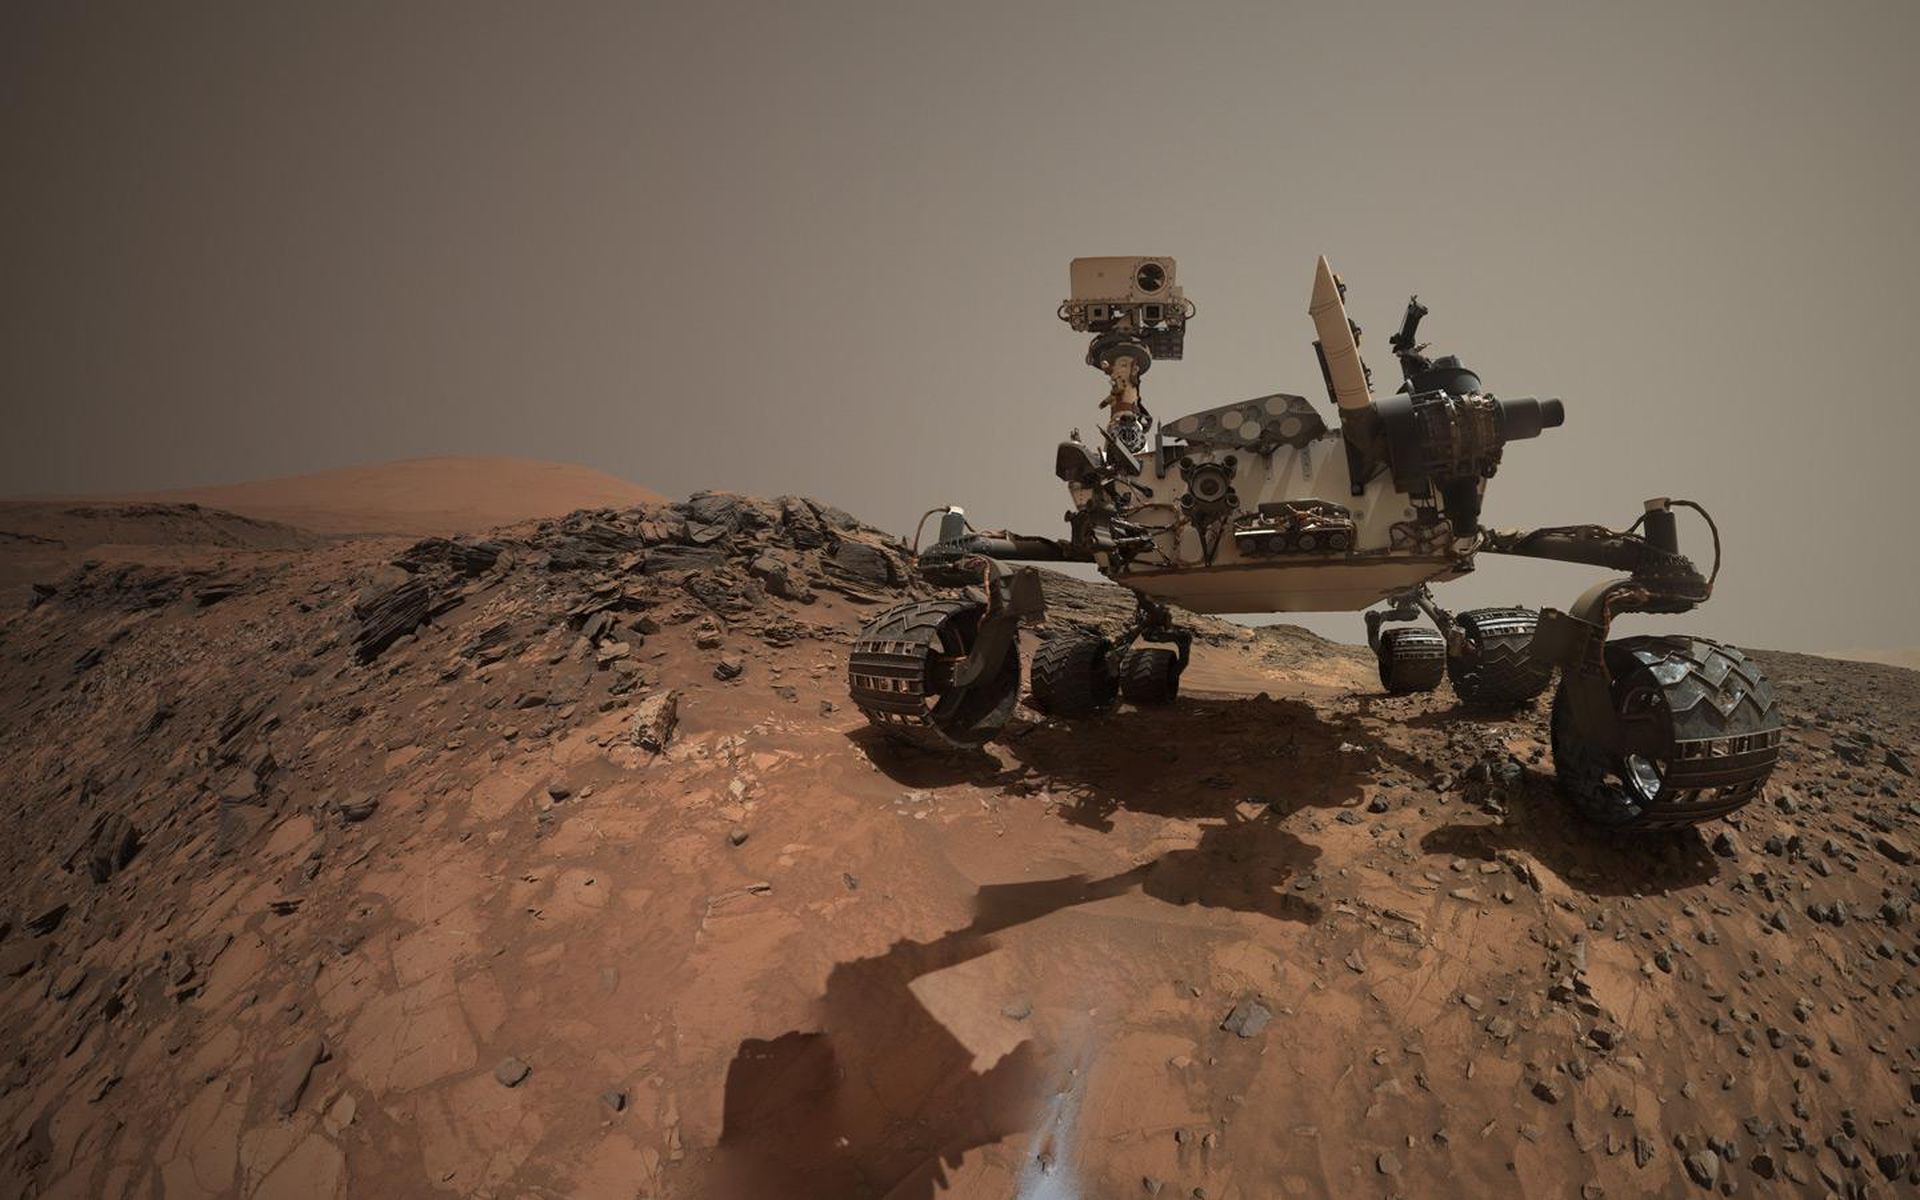 Space Image. Looking Up at Mars Rover Curiosity in 'Buckskin' Selfie